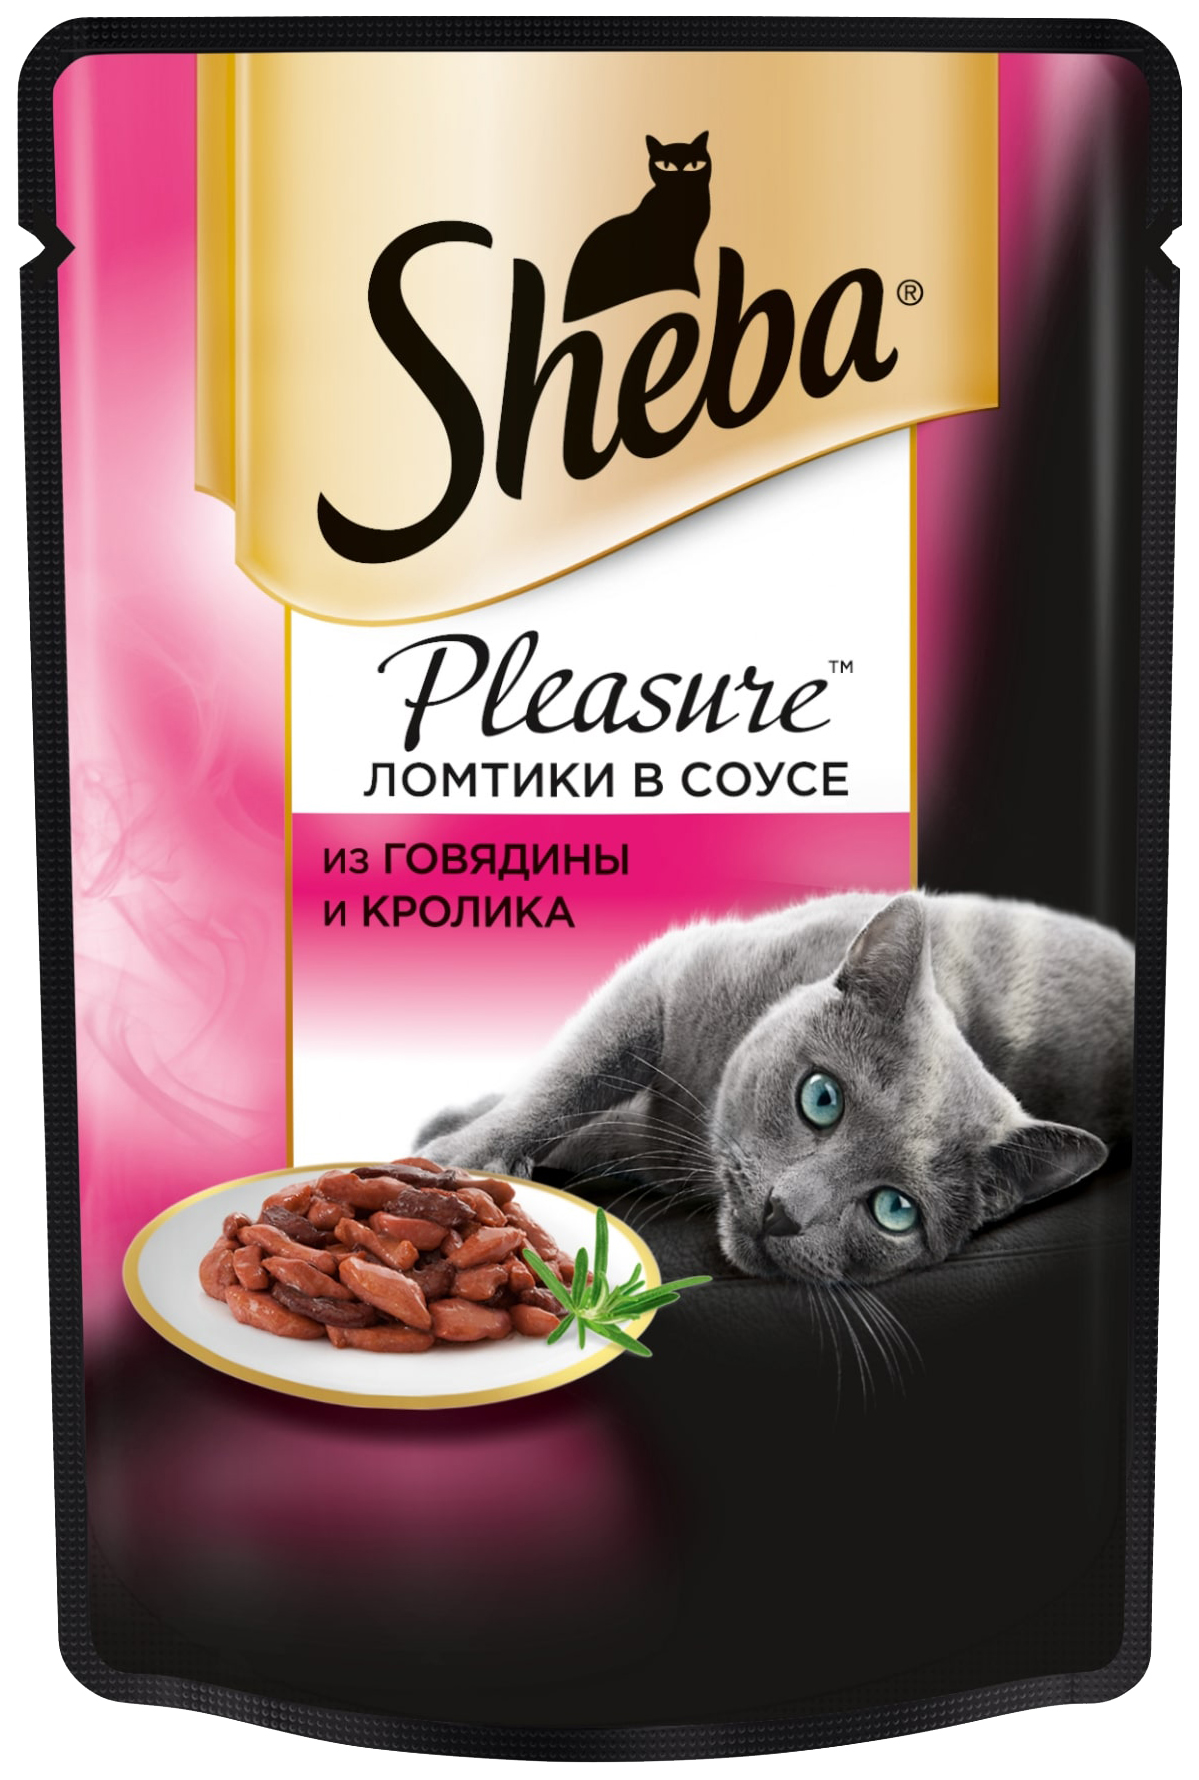 Влажный корм для кошек Sheba Pleasure Ломтики из говядины и кролика в соусе, 24 шт по 85г